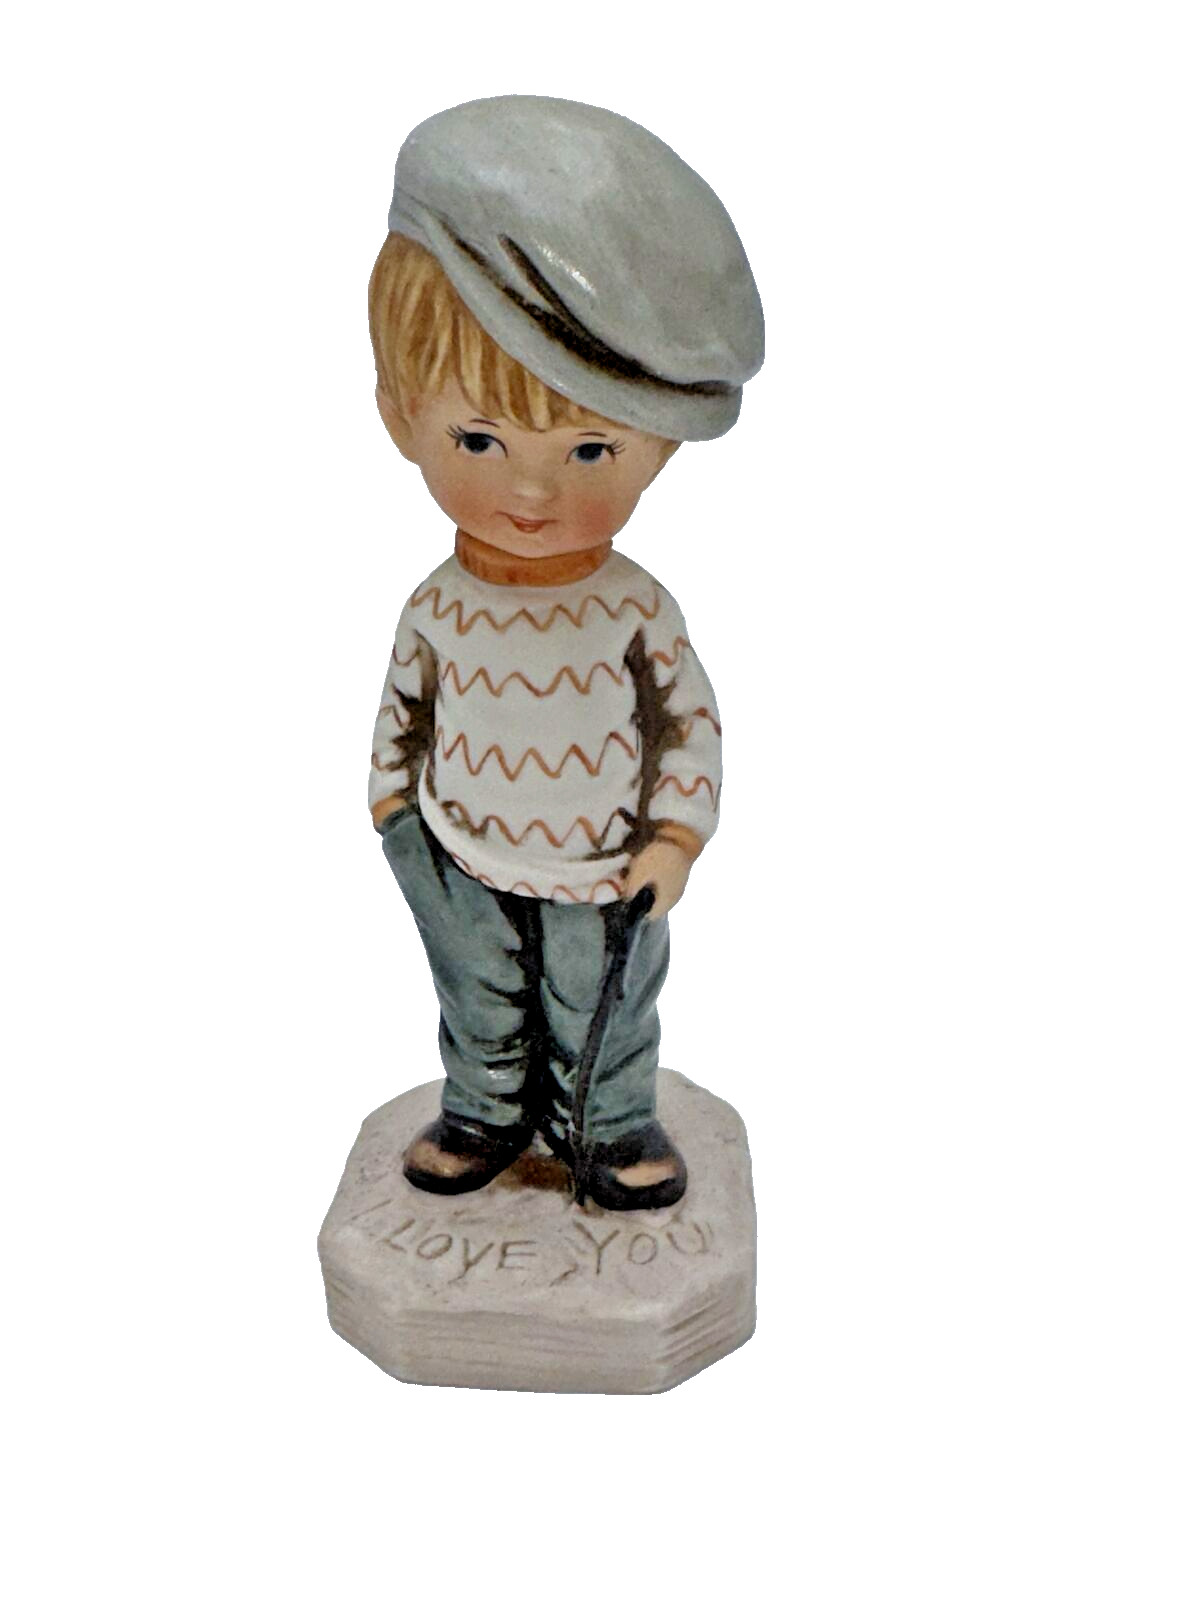 Vintage Moppets 1971 Fran Mar Boy W/Stick I Love You Porcelain Figurine 6 3/4”